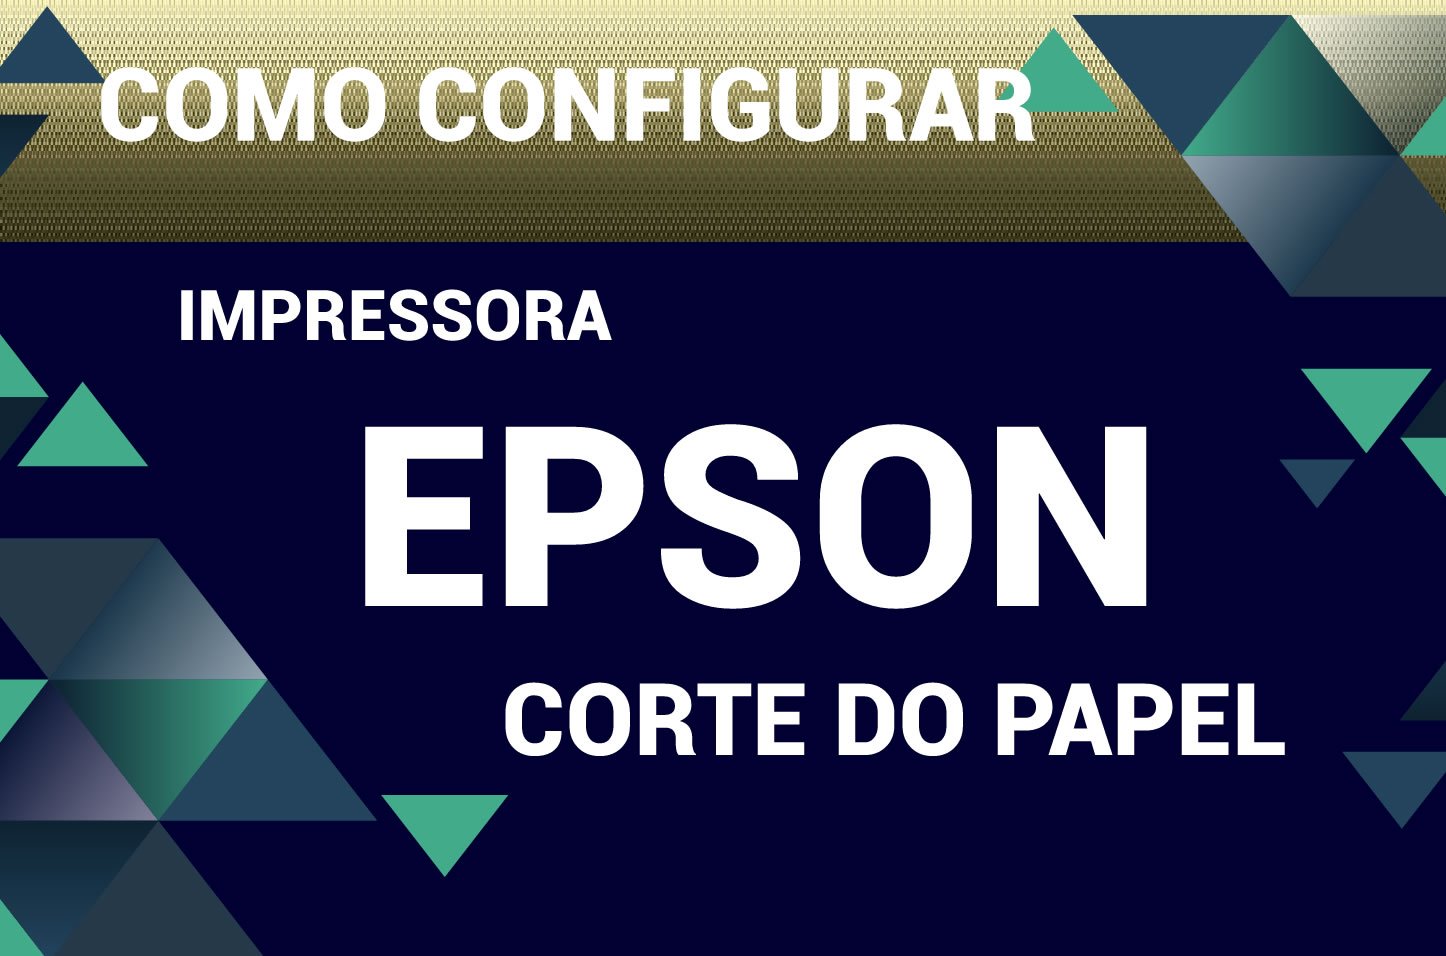 Video - Impressora EPSON - configuração de guilhotina - corte automático - POS - Cupom Não Fiscal -  VE Software 